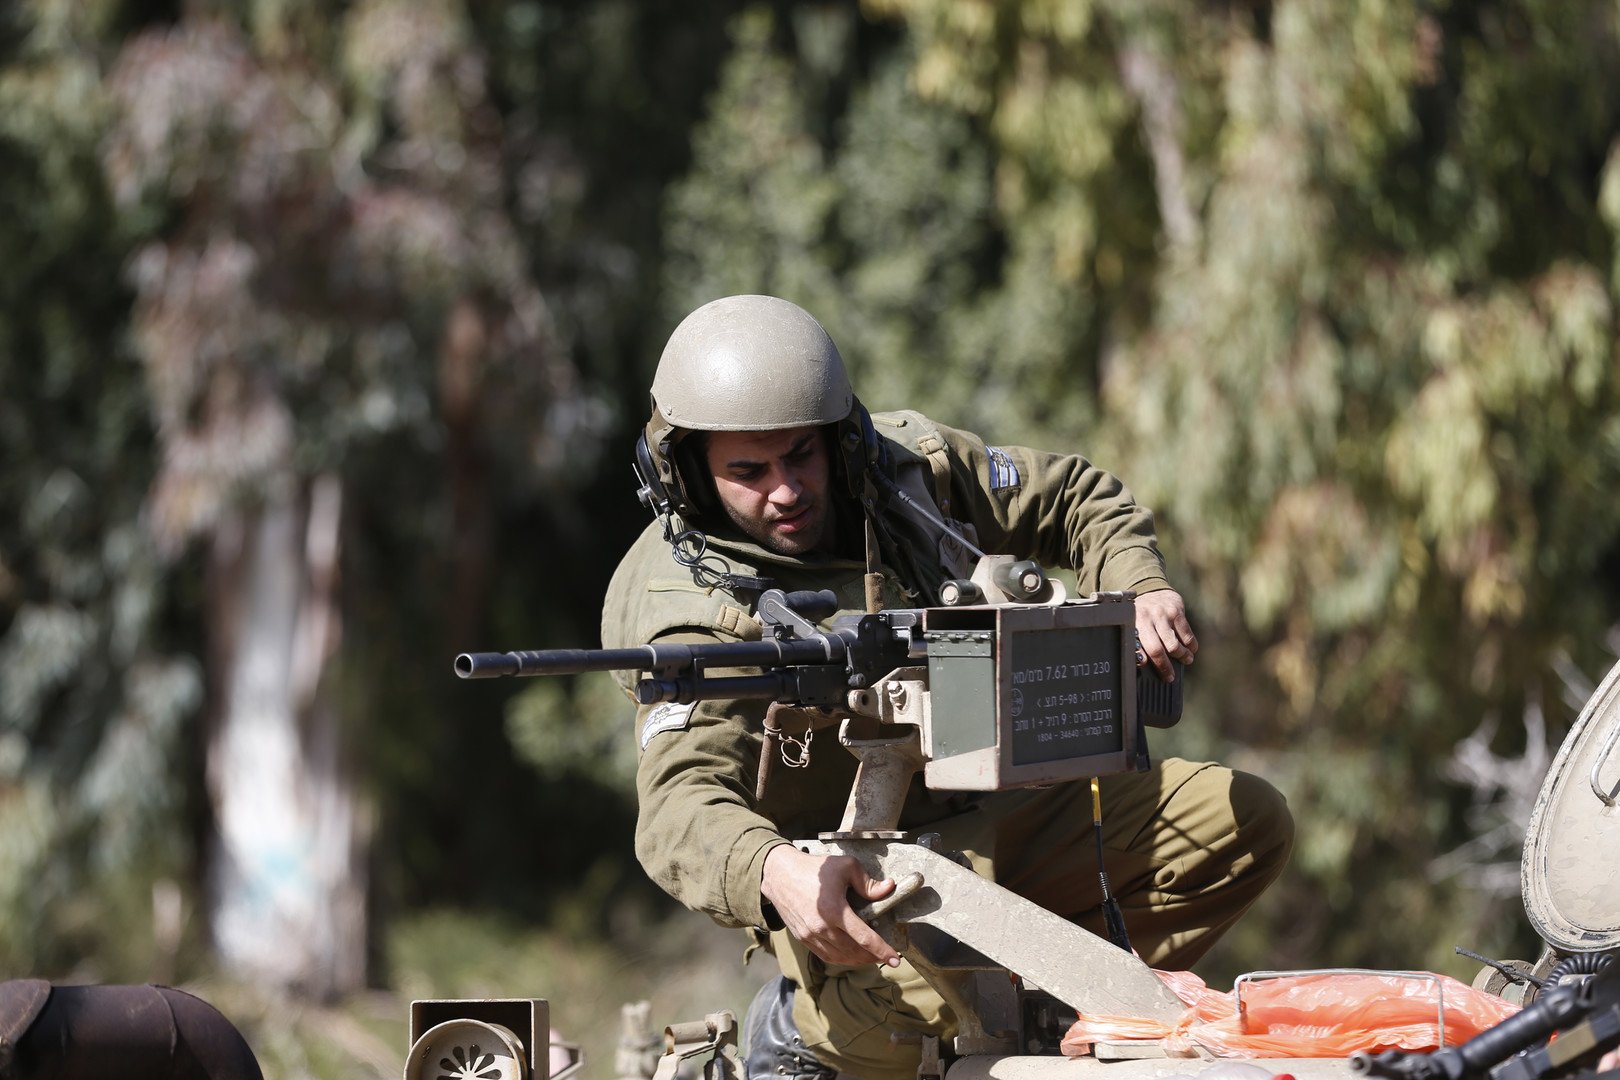 جندي اسرائيلي يُعدّل من وضعية سلاحه فوق مدرعته، على الحدود الاسرائيلية اللبنانية، 28 يناير 2015